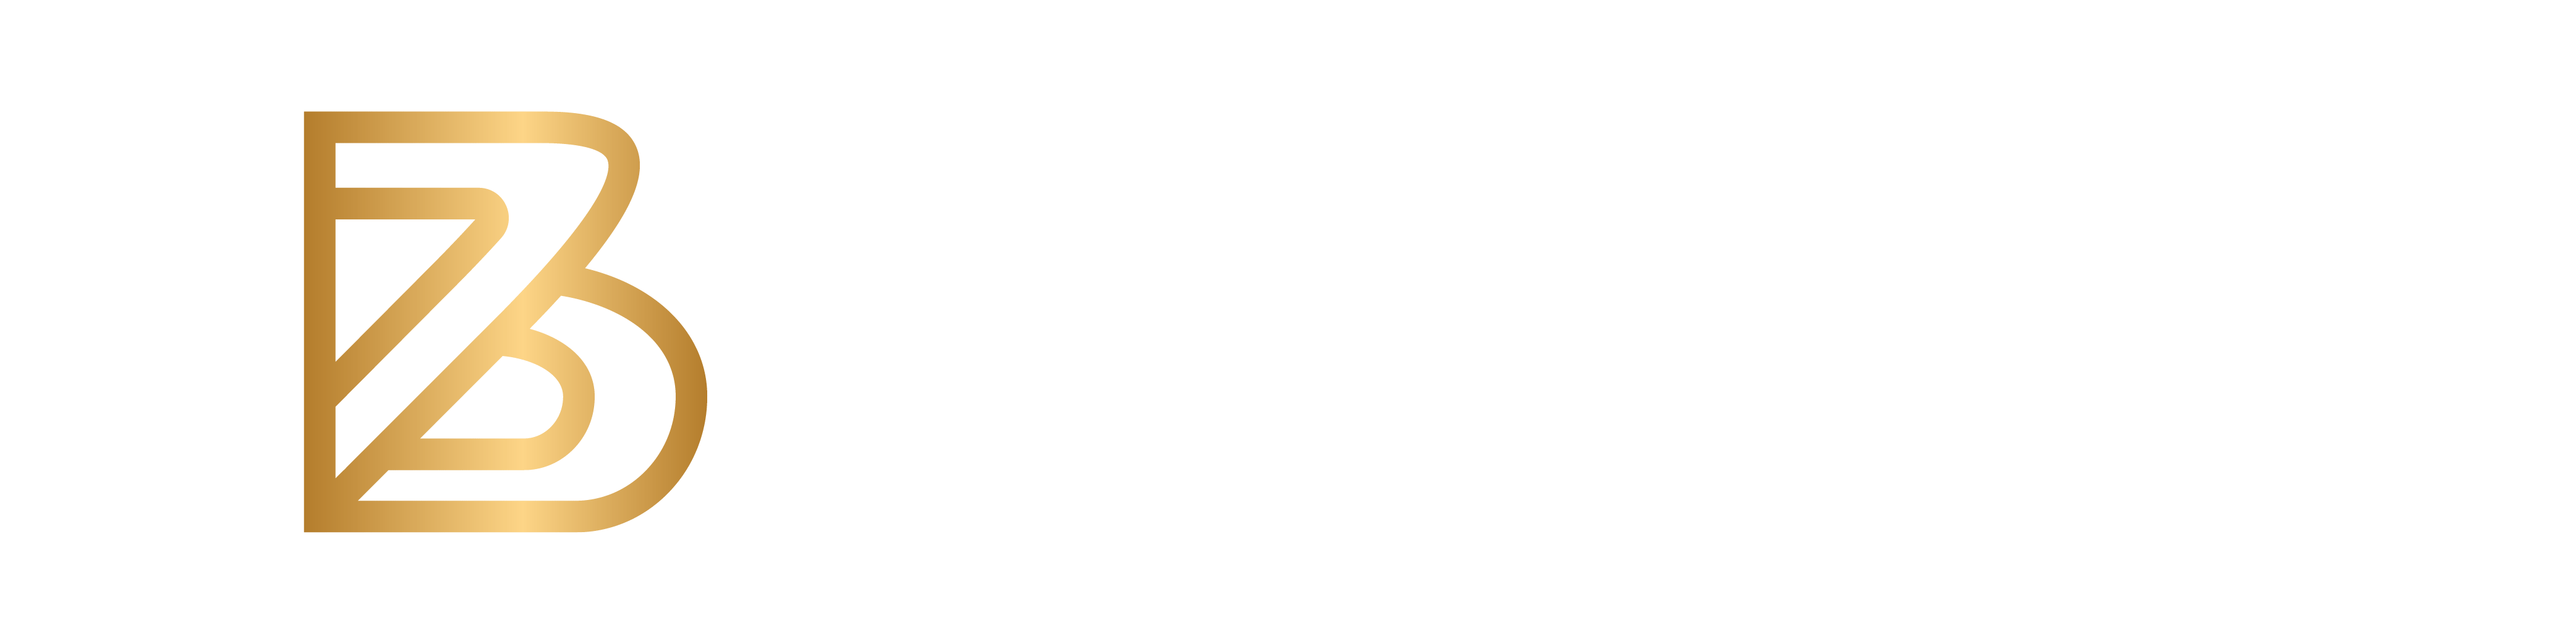 Broadwings Family Office